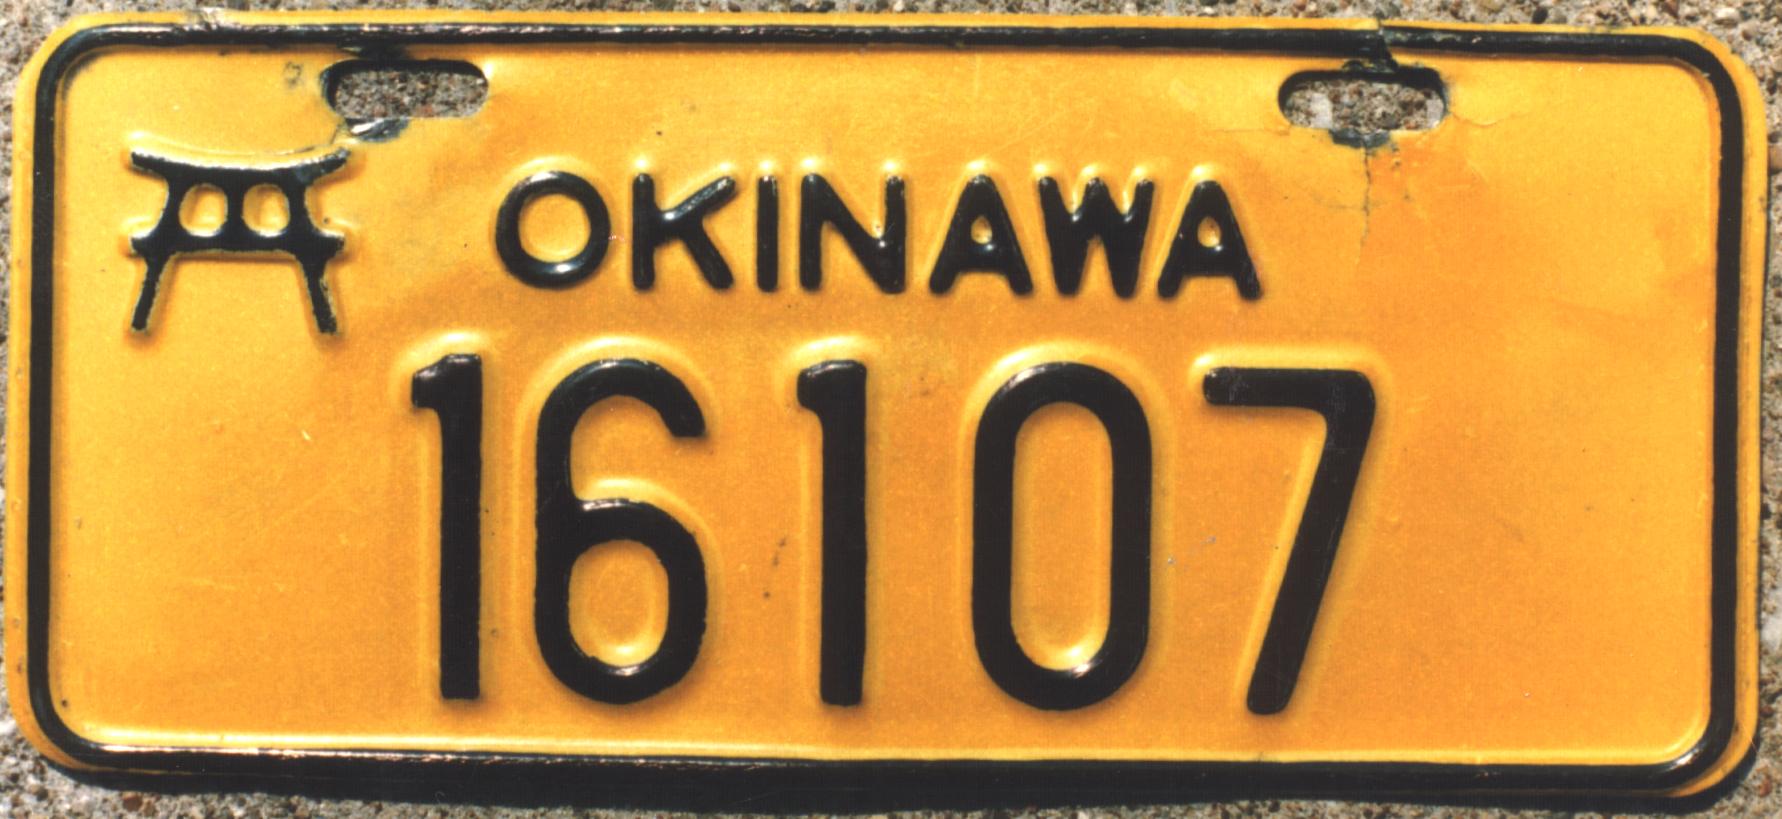 US_in_Okinawa_1962-mc-16107-JB_Eu139